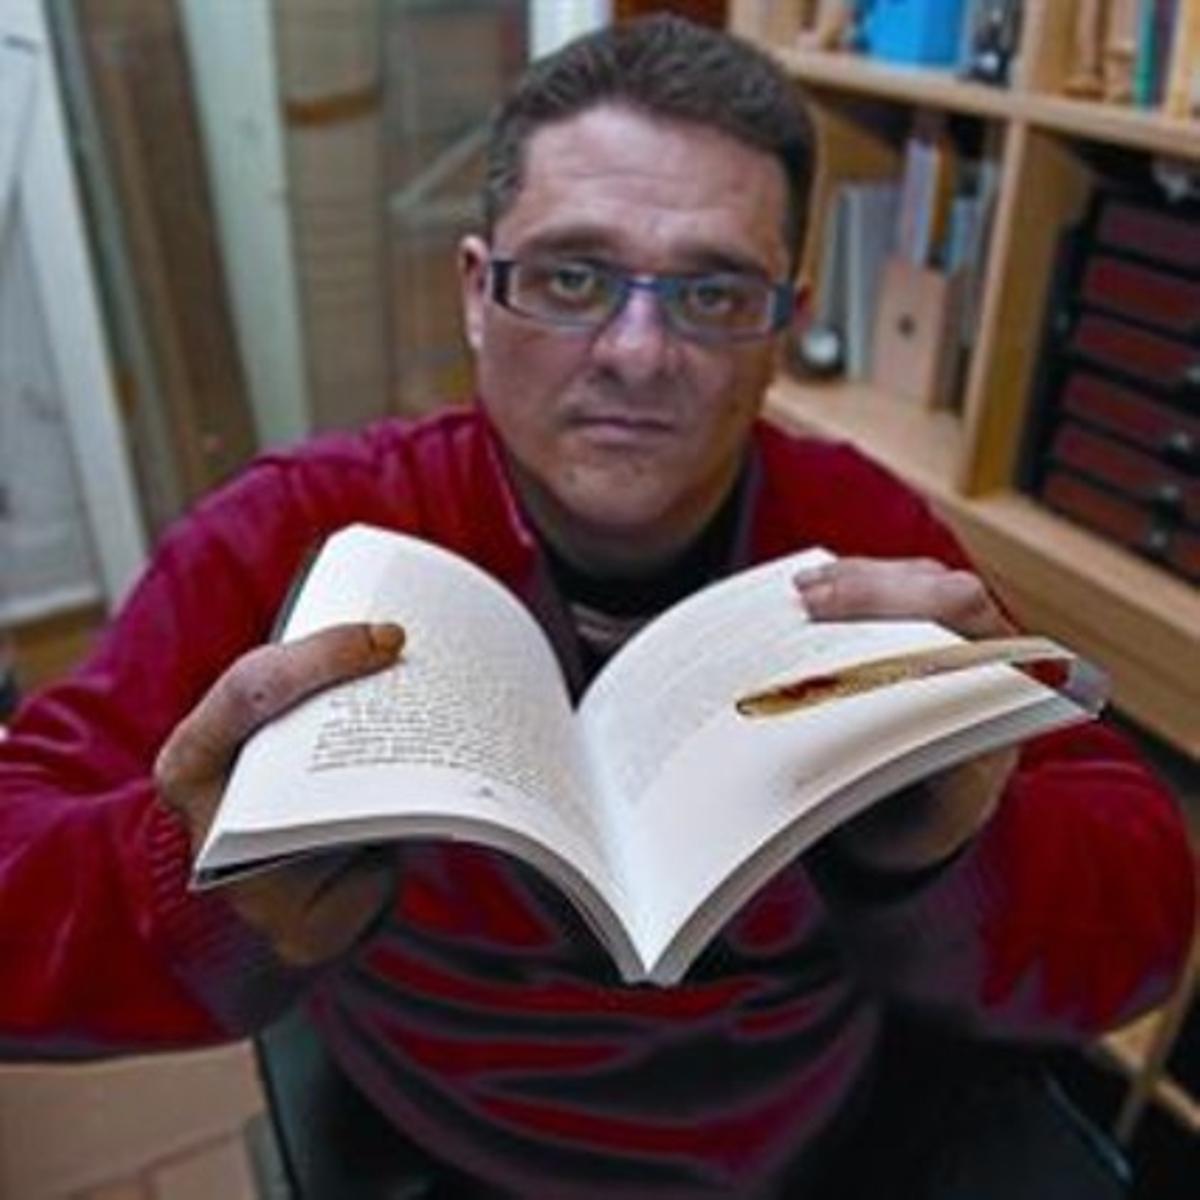 Fernando Sánchez muestra con orgullo su marcapáginas en un libro.